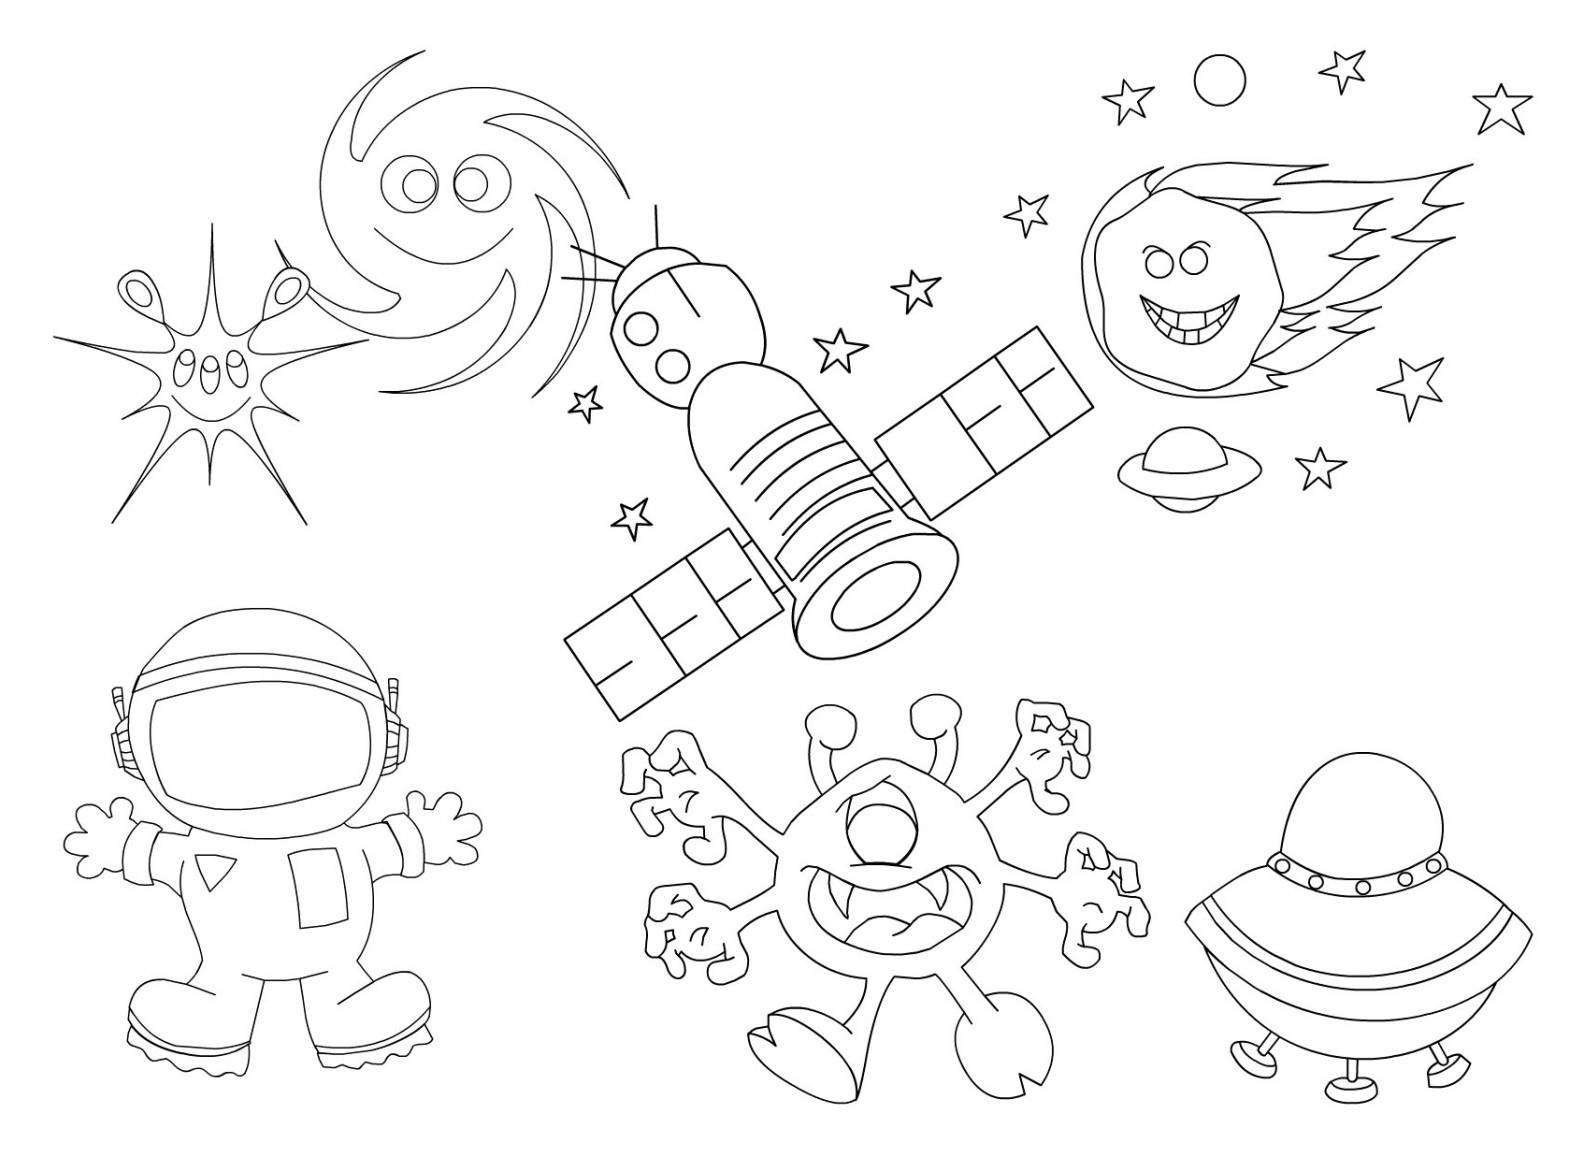 Скачать бесплатные раскраски со звёздами. Раскраски детские окружающий мир. Раскраски для детей с кометами. Раскраски для детей космос. Бесплатные детские раскраски.